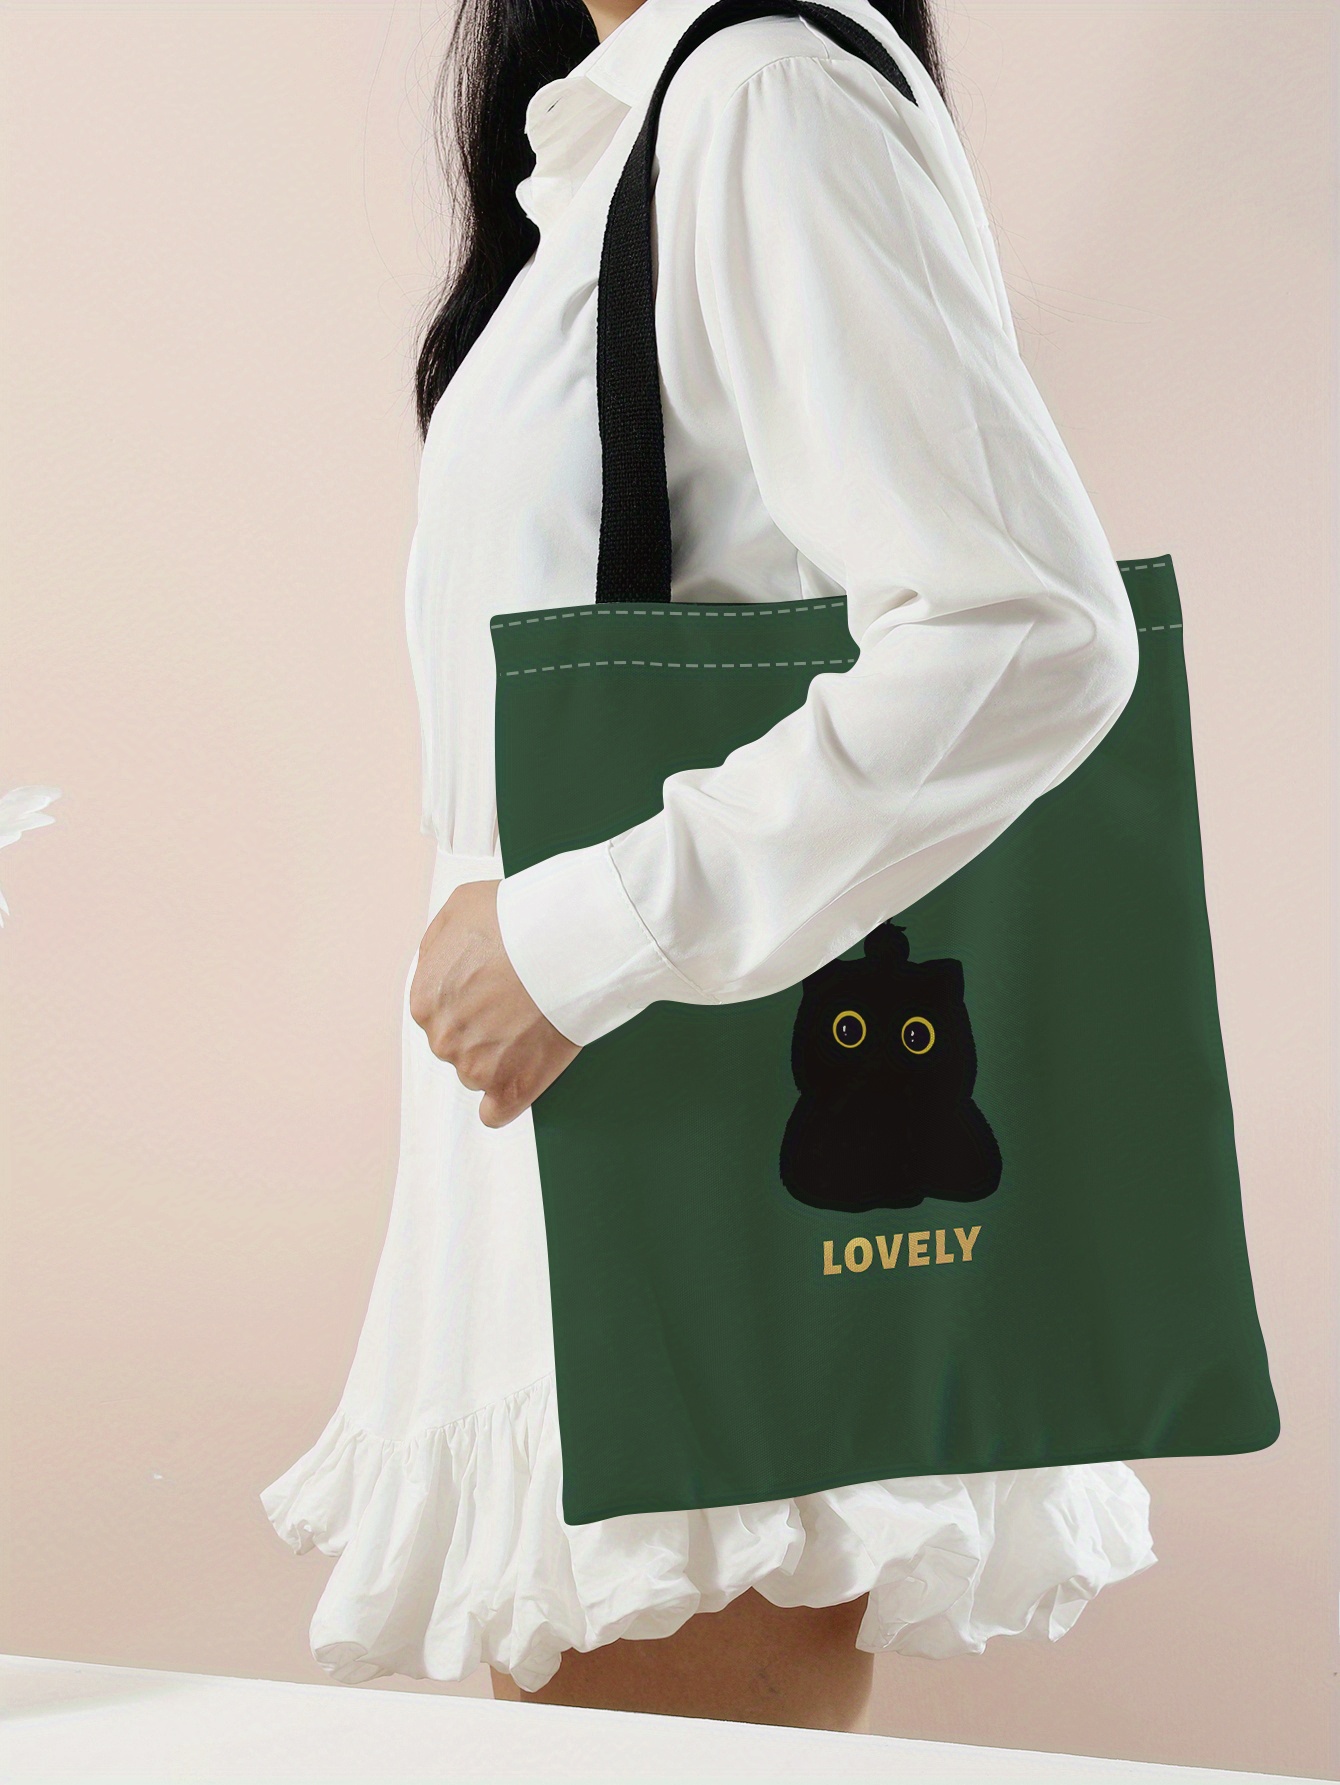 Is That The New Kawaii Green Messenger Bag Cartoon Design Cute ??